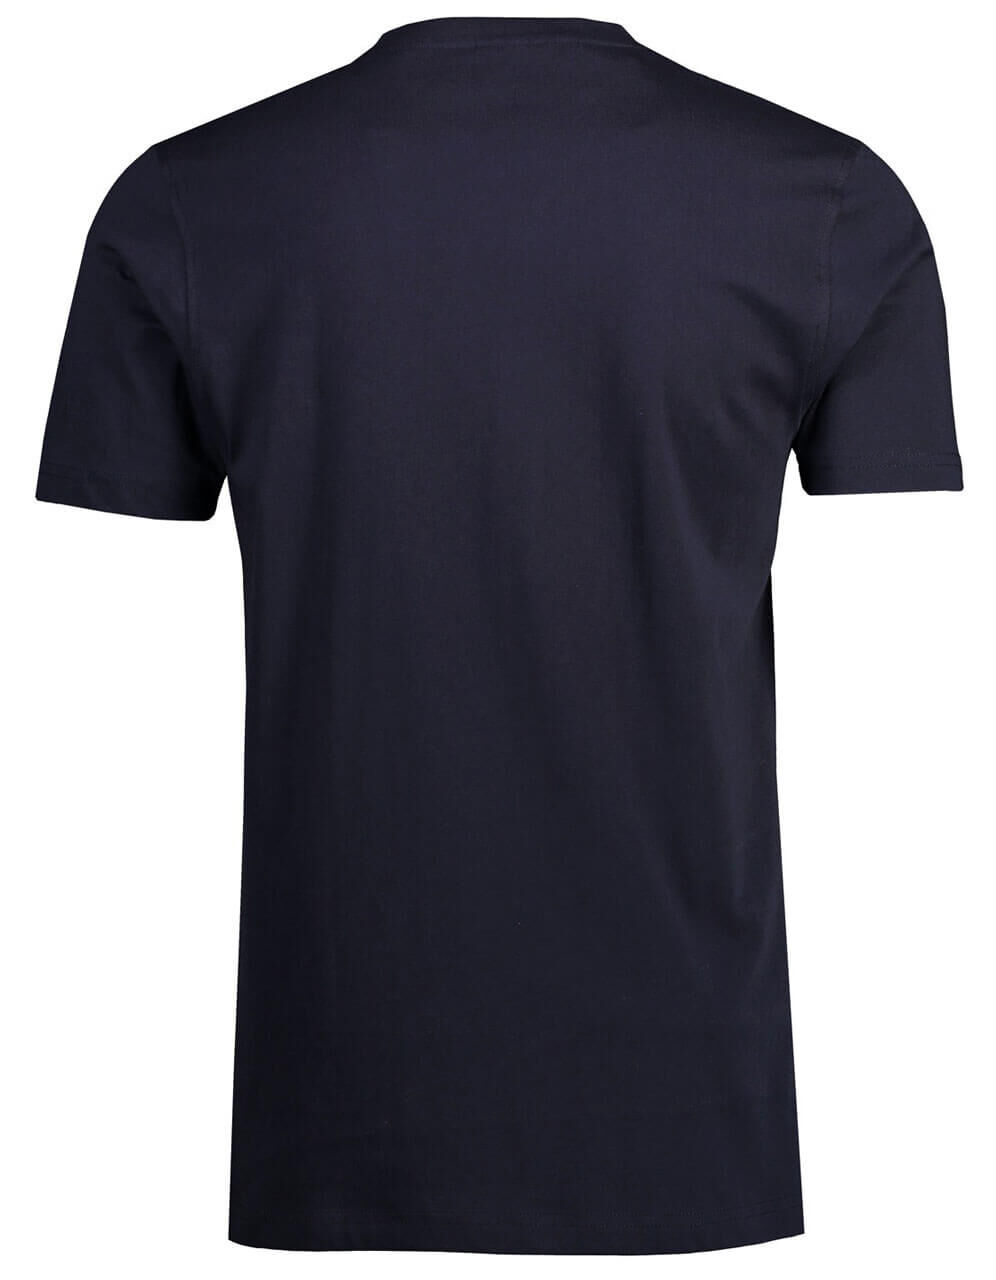 Lerros T-Shirts Doppelpack für Herren in Dunkelblau, FarbNr.: 480